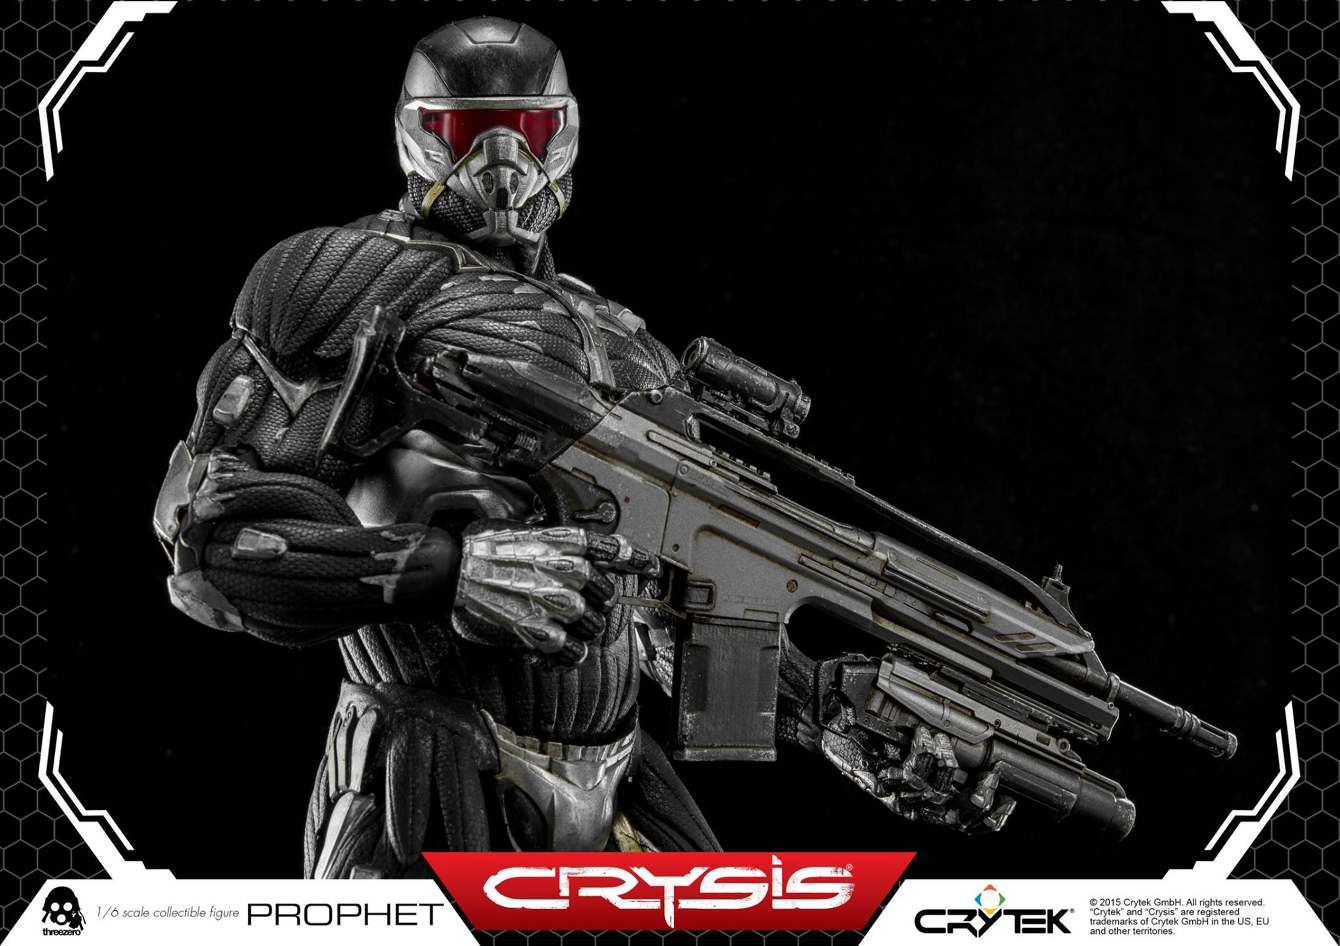 ThreeZero-Crysis-video-game-Prophet-CRY14_1340_c.jpg